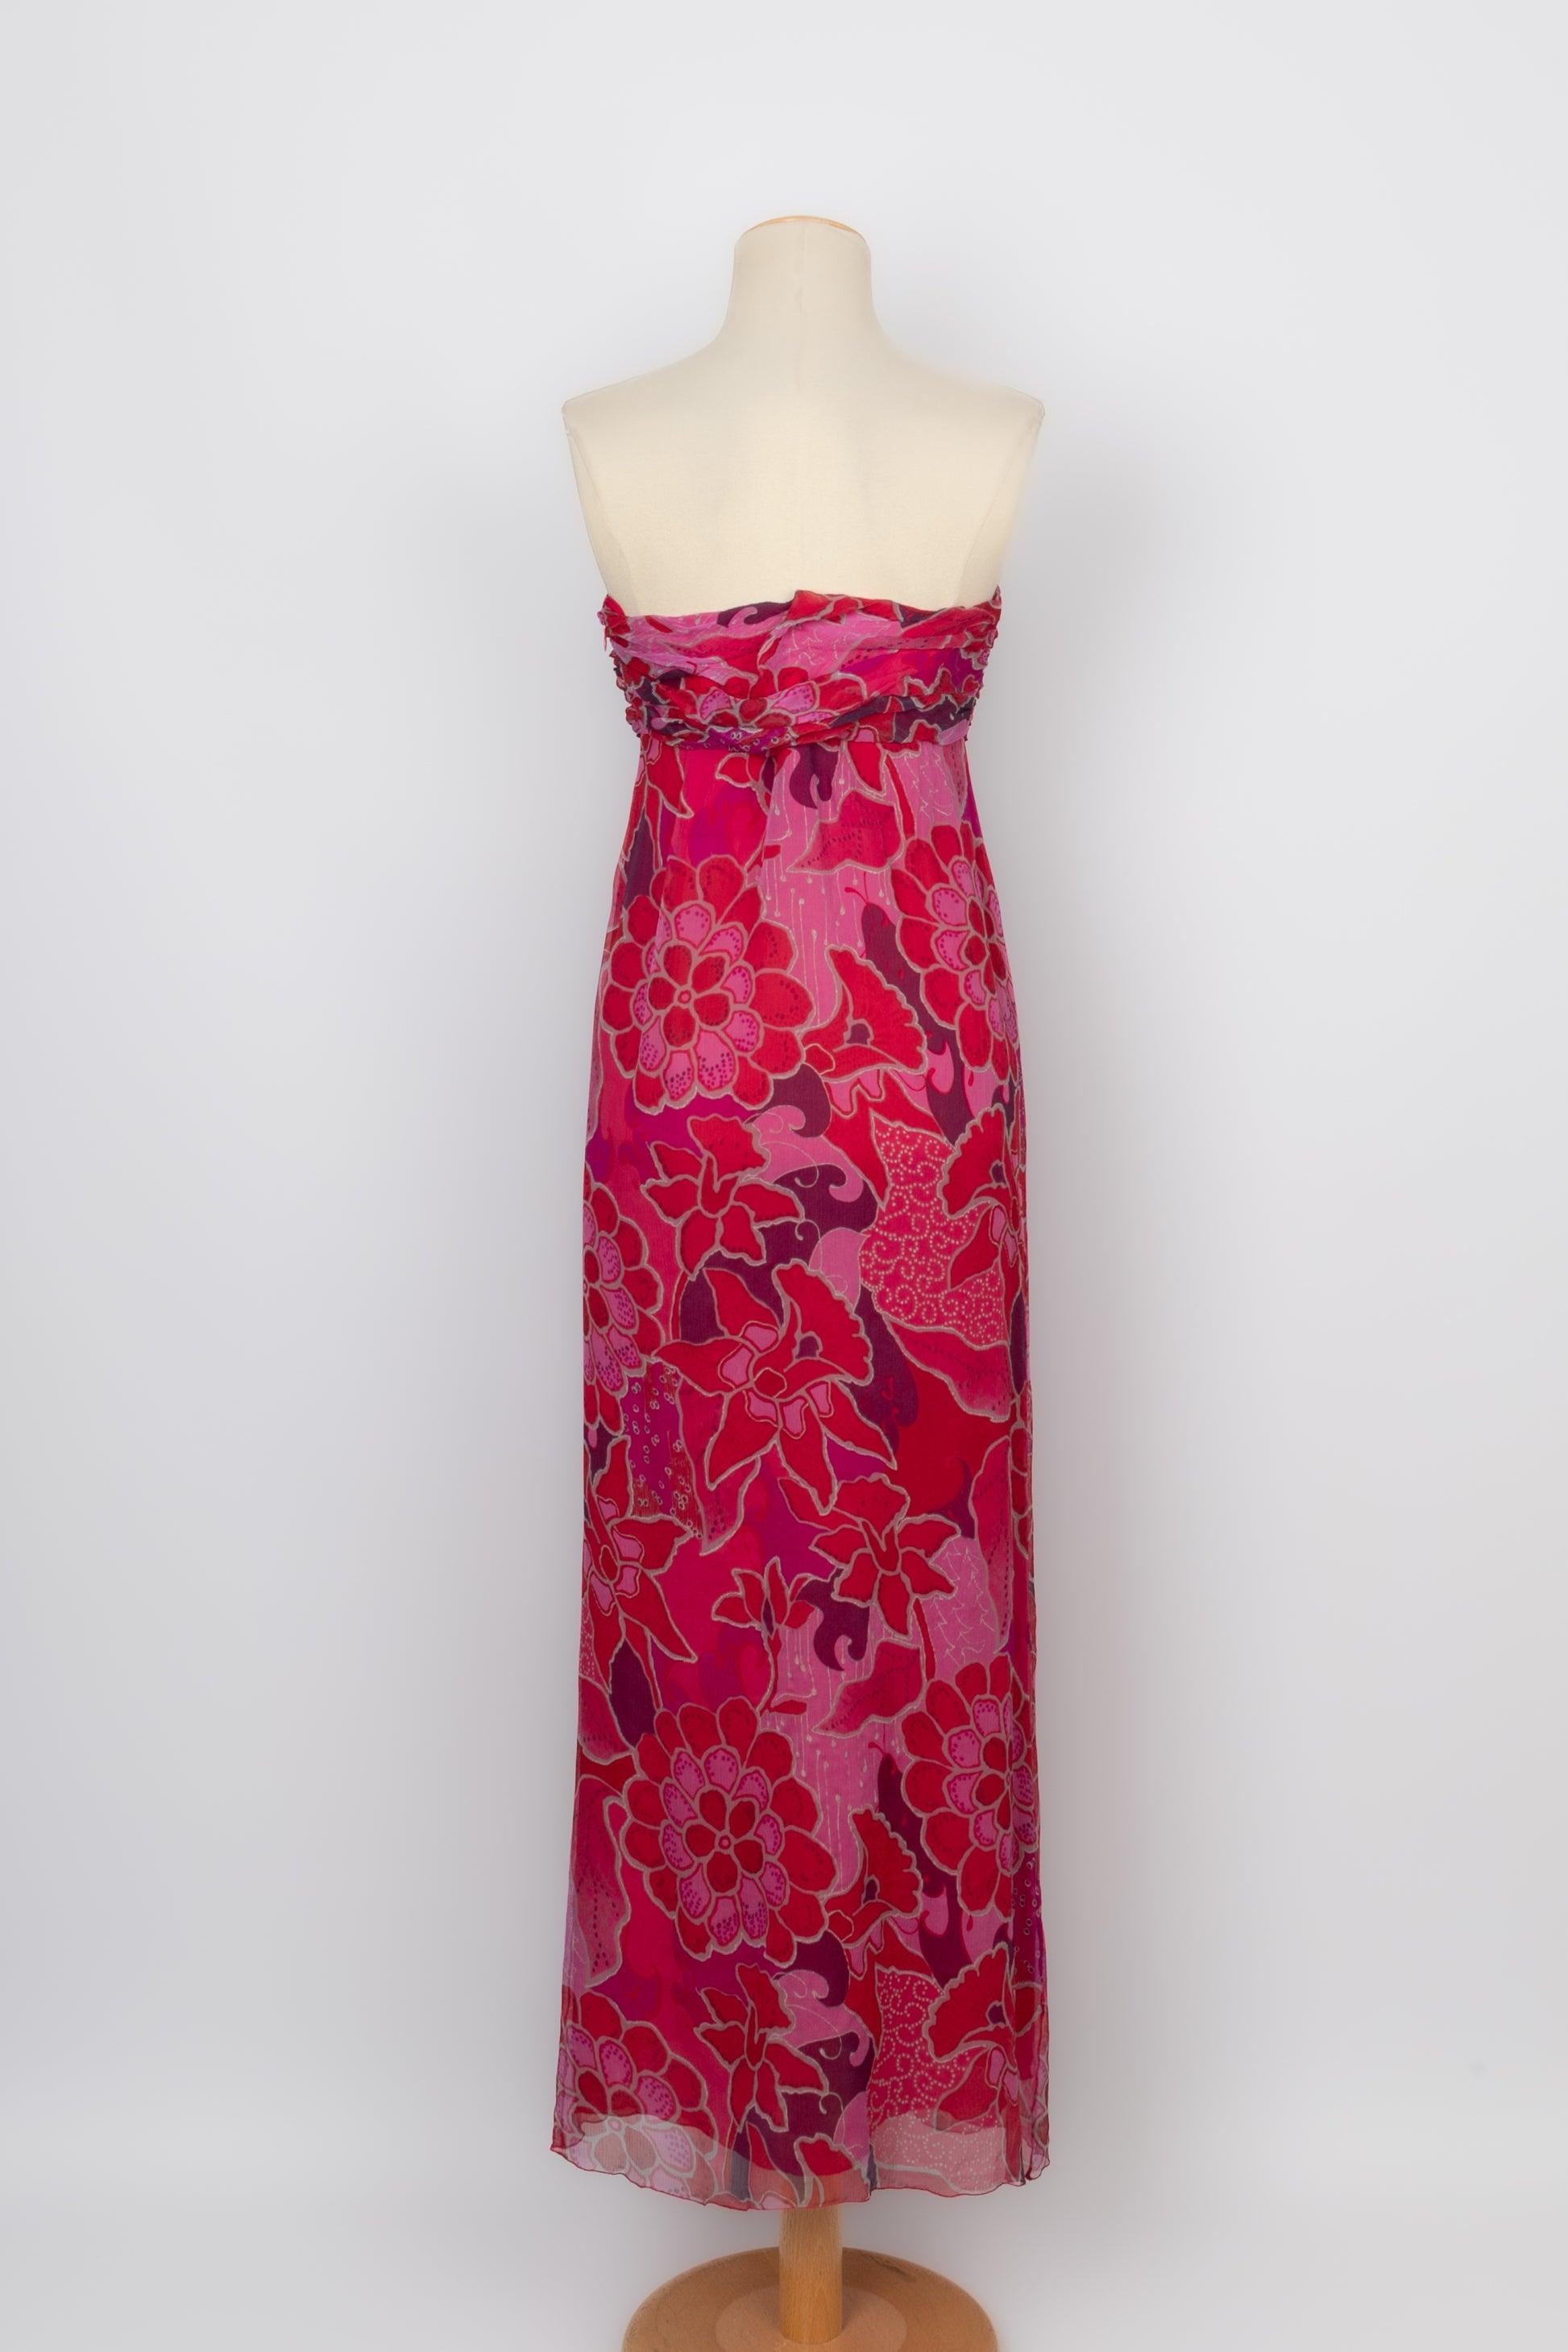 Ungaro Bustier Dress in Pink Tones For Sale 1